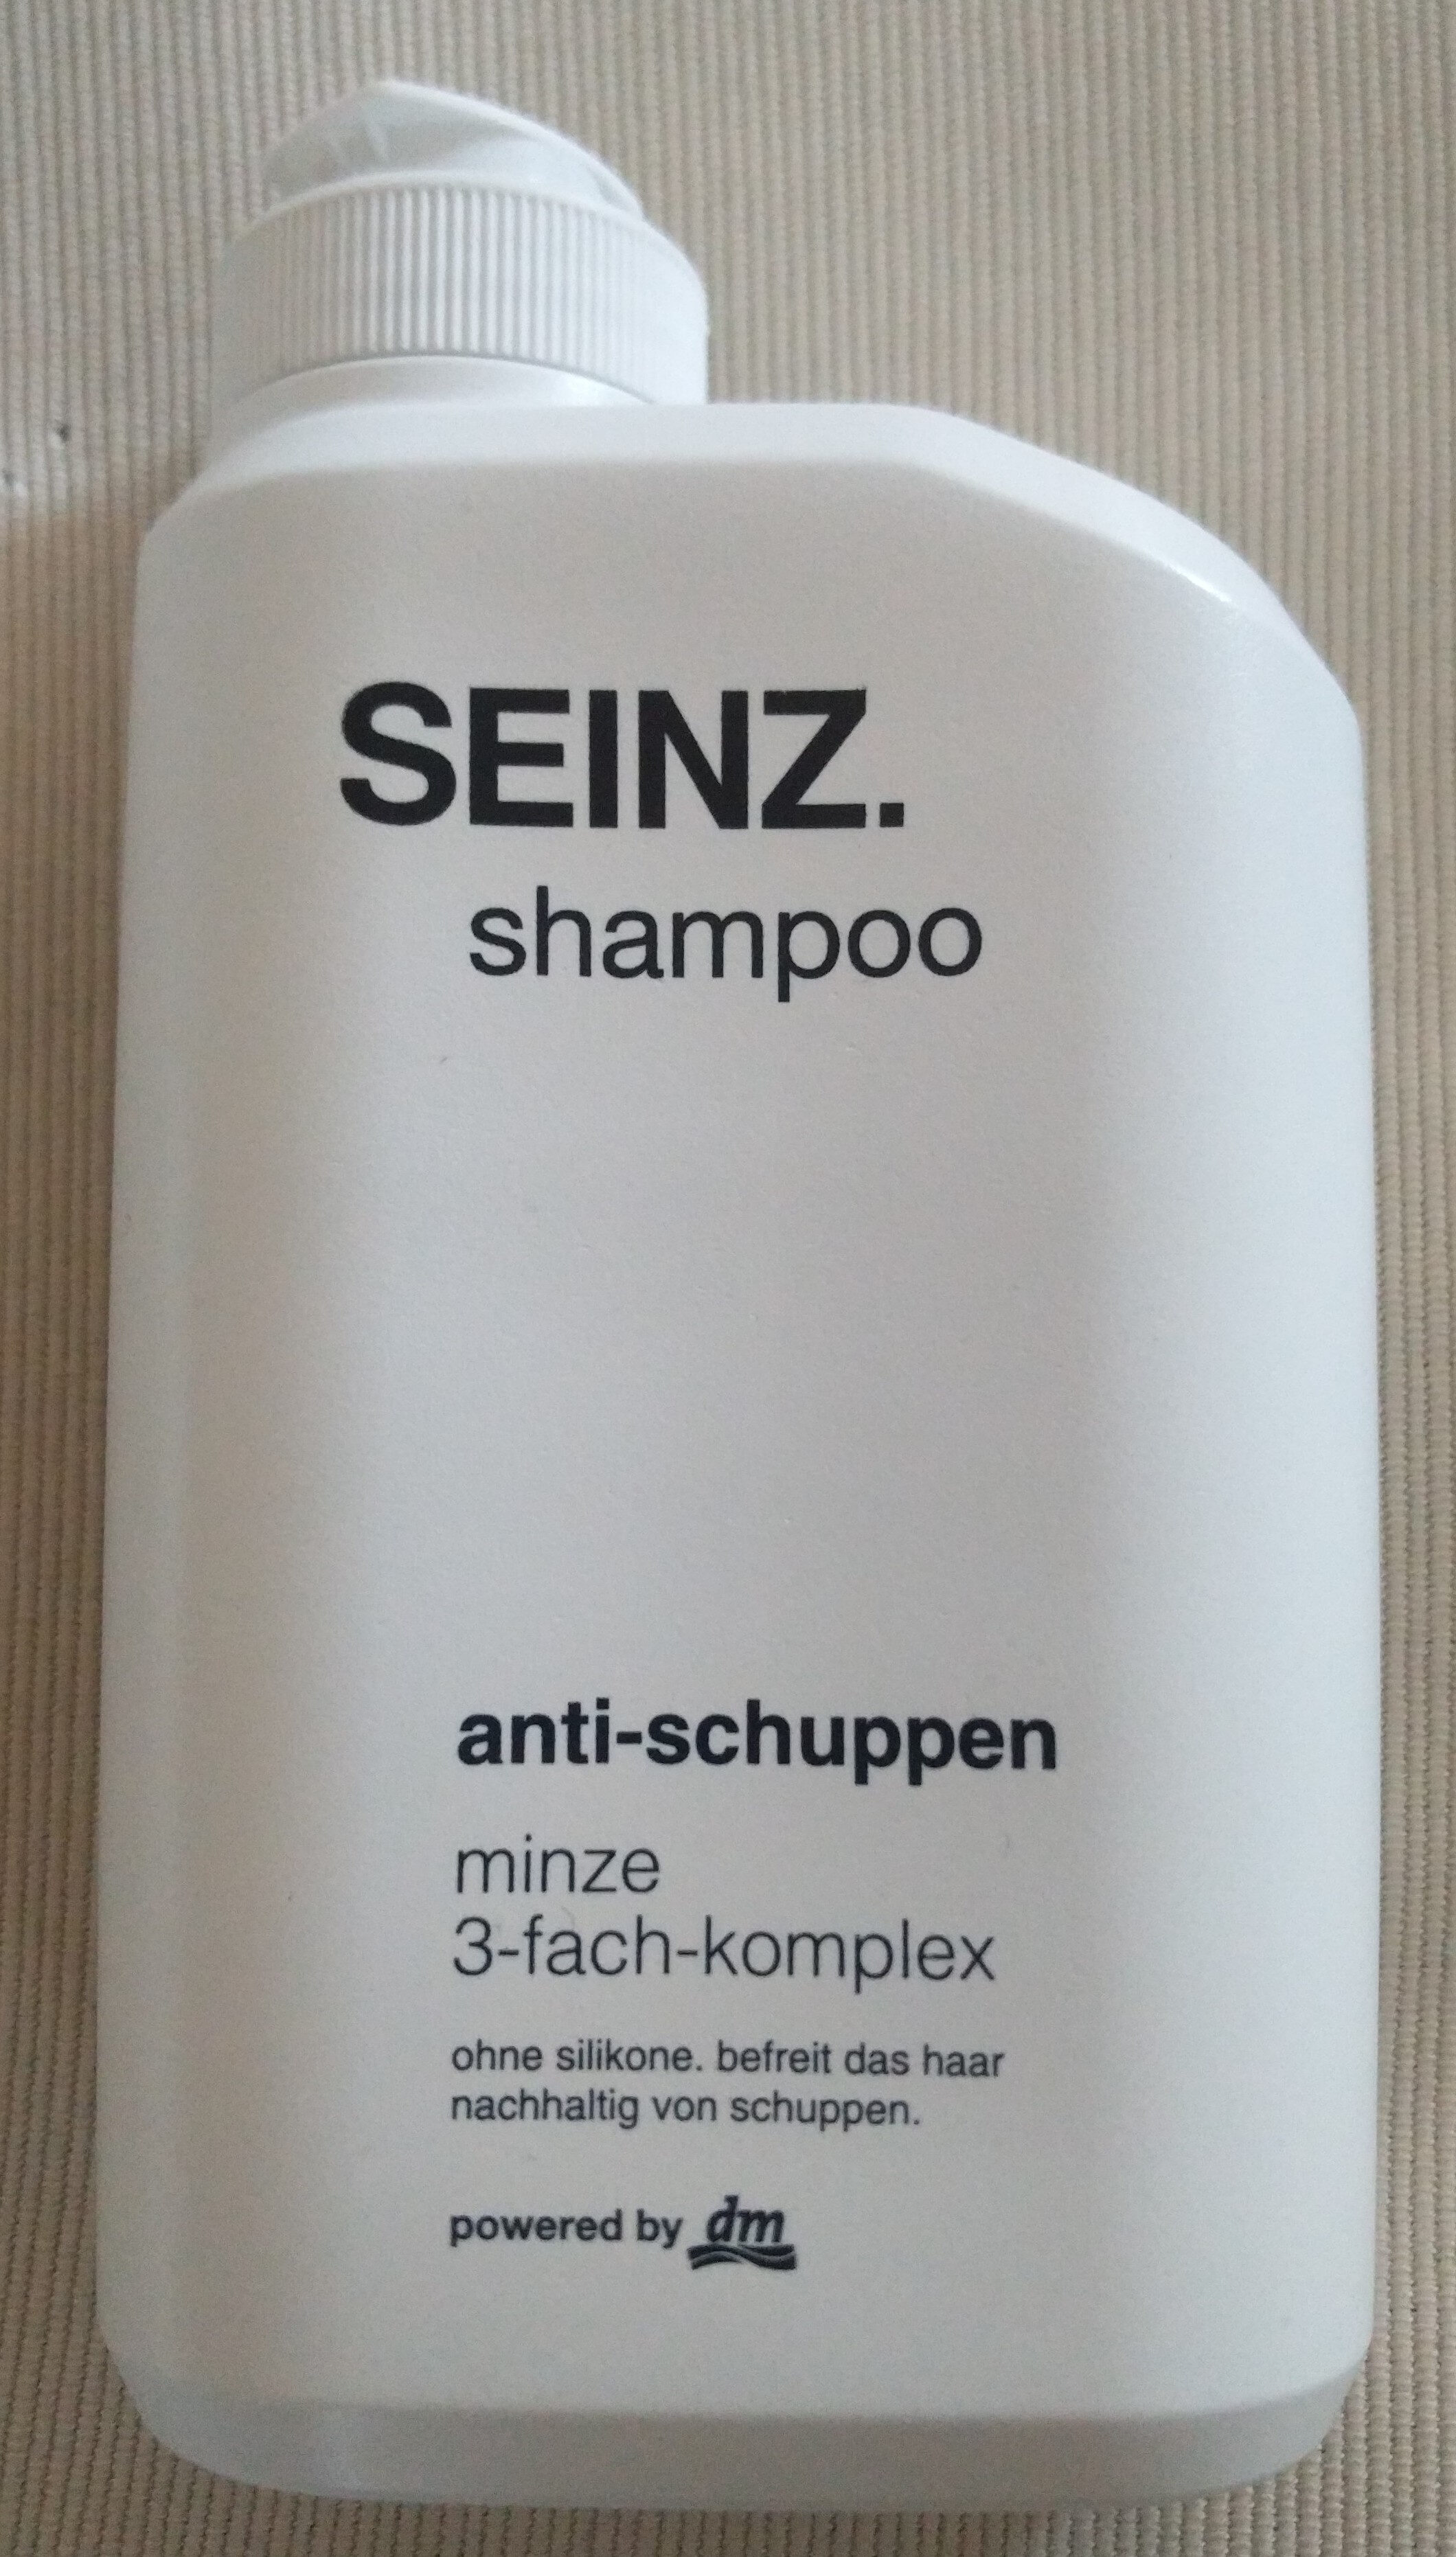 shampoo anti-schuppen (minze 3-fach-komplex) - Produit - de